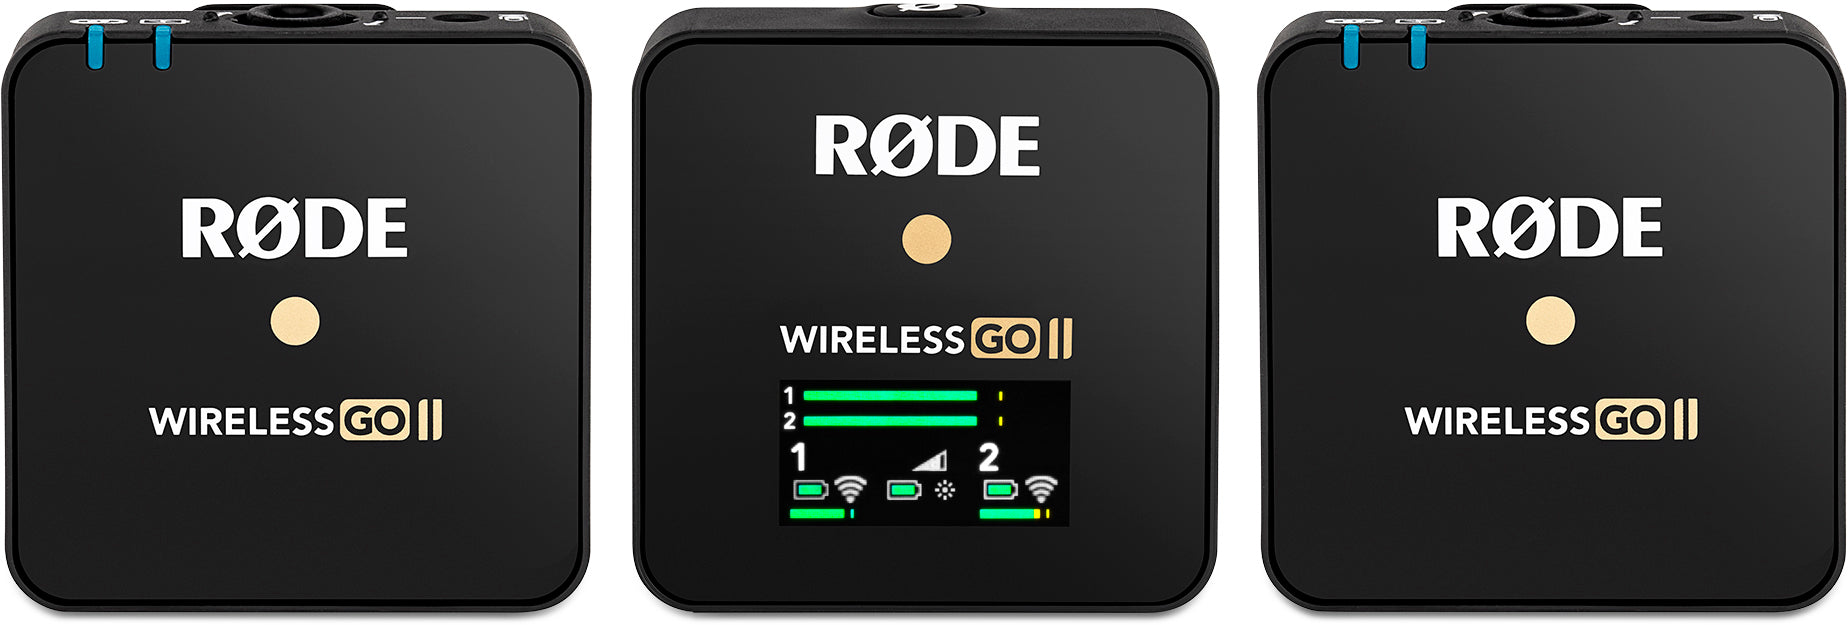 Rode Wireless GO II Dual Channel Compact Digital Wireless